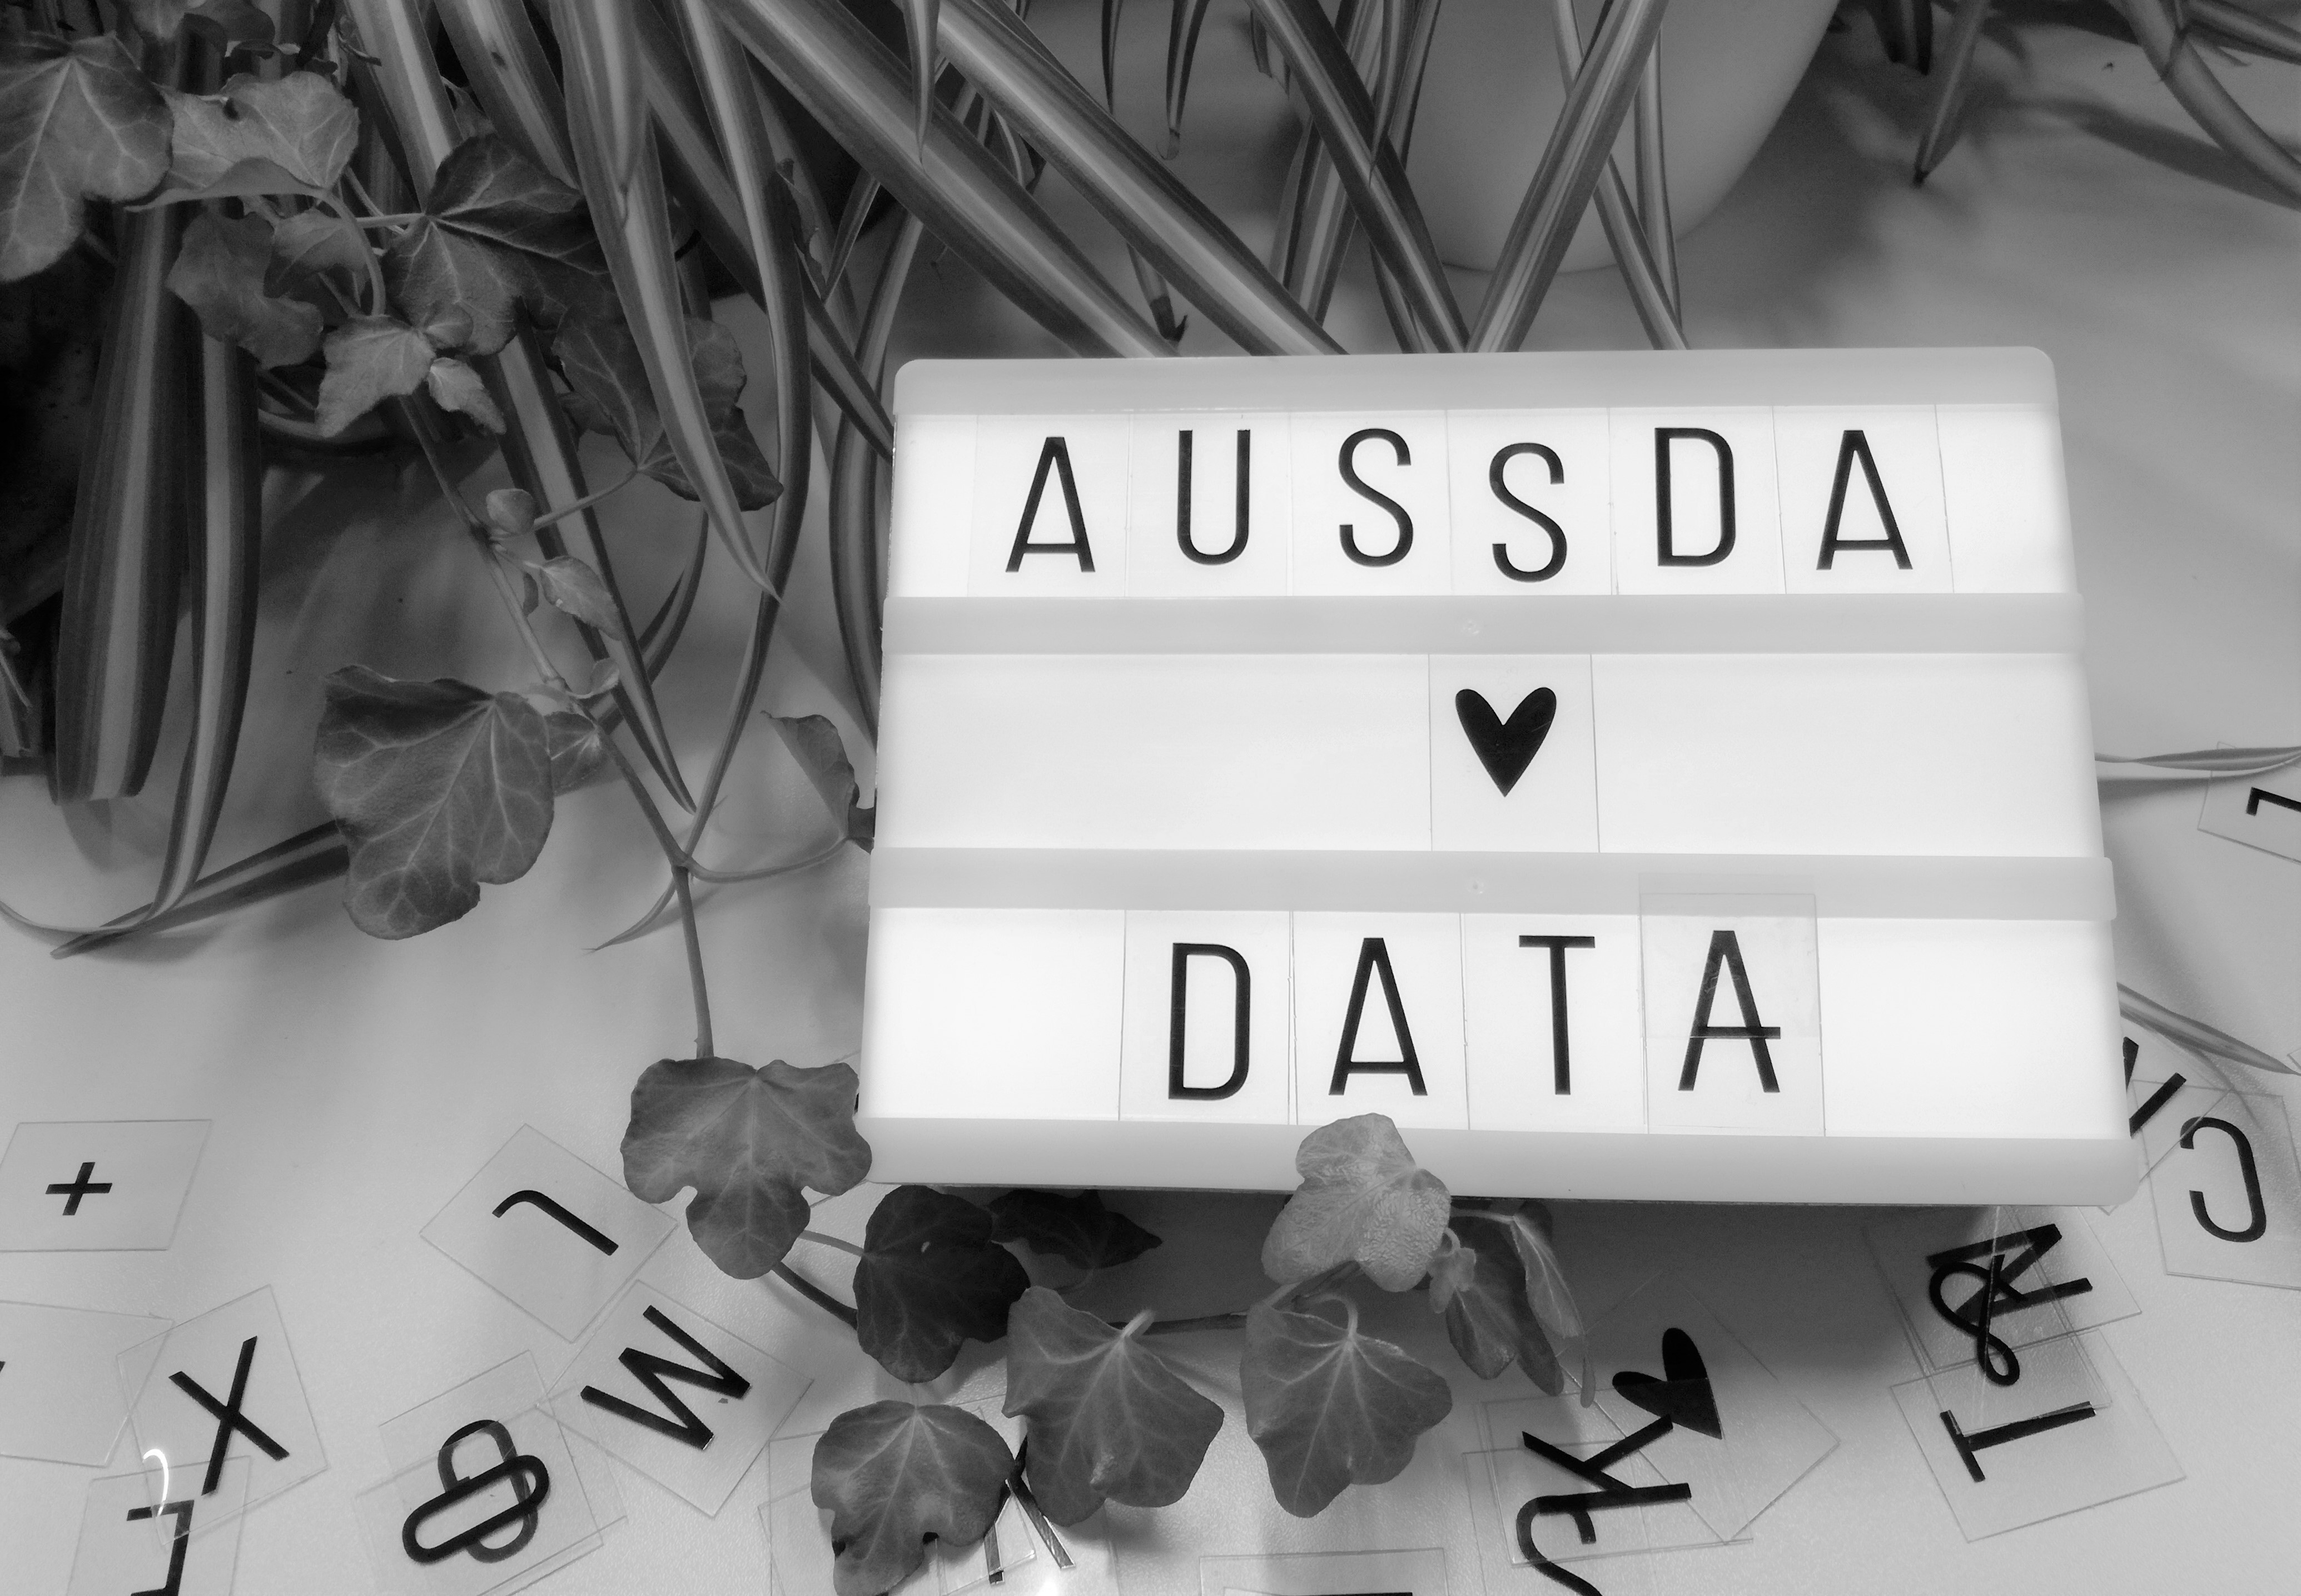 Das Bild zeigt eine Leuchttafel mit der Aufschrift "AUSSDA loves Data".